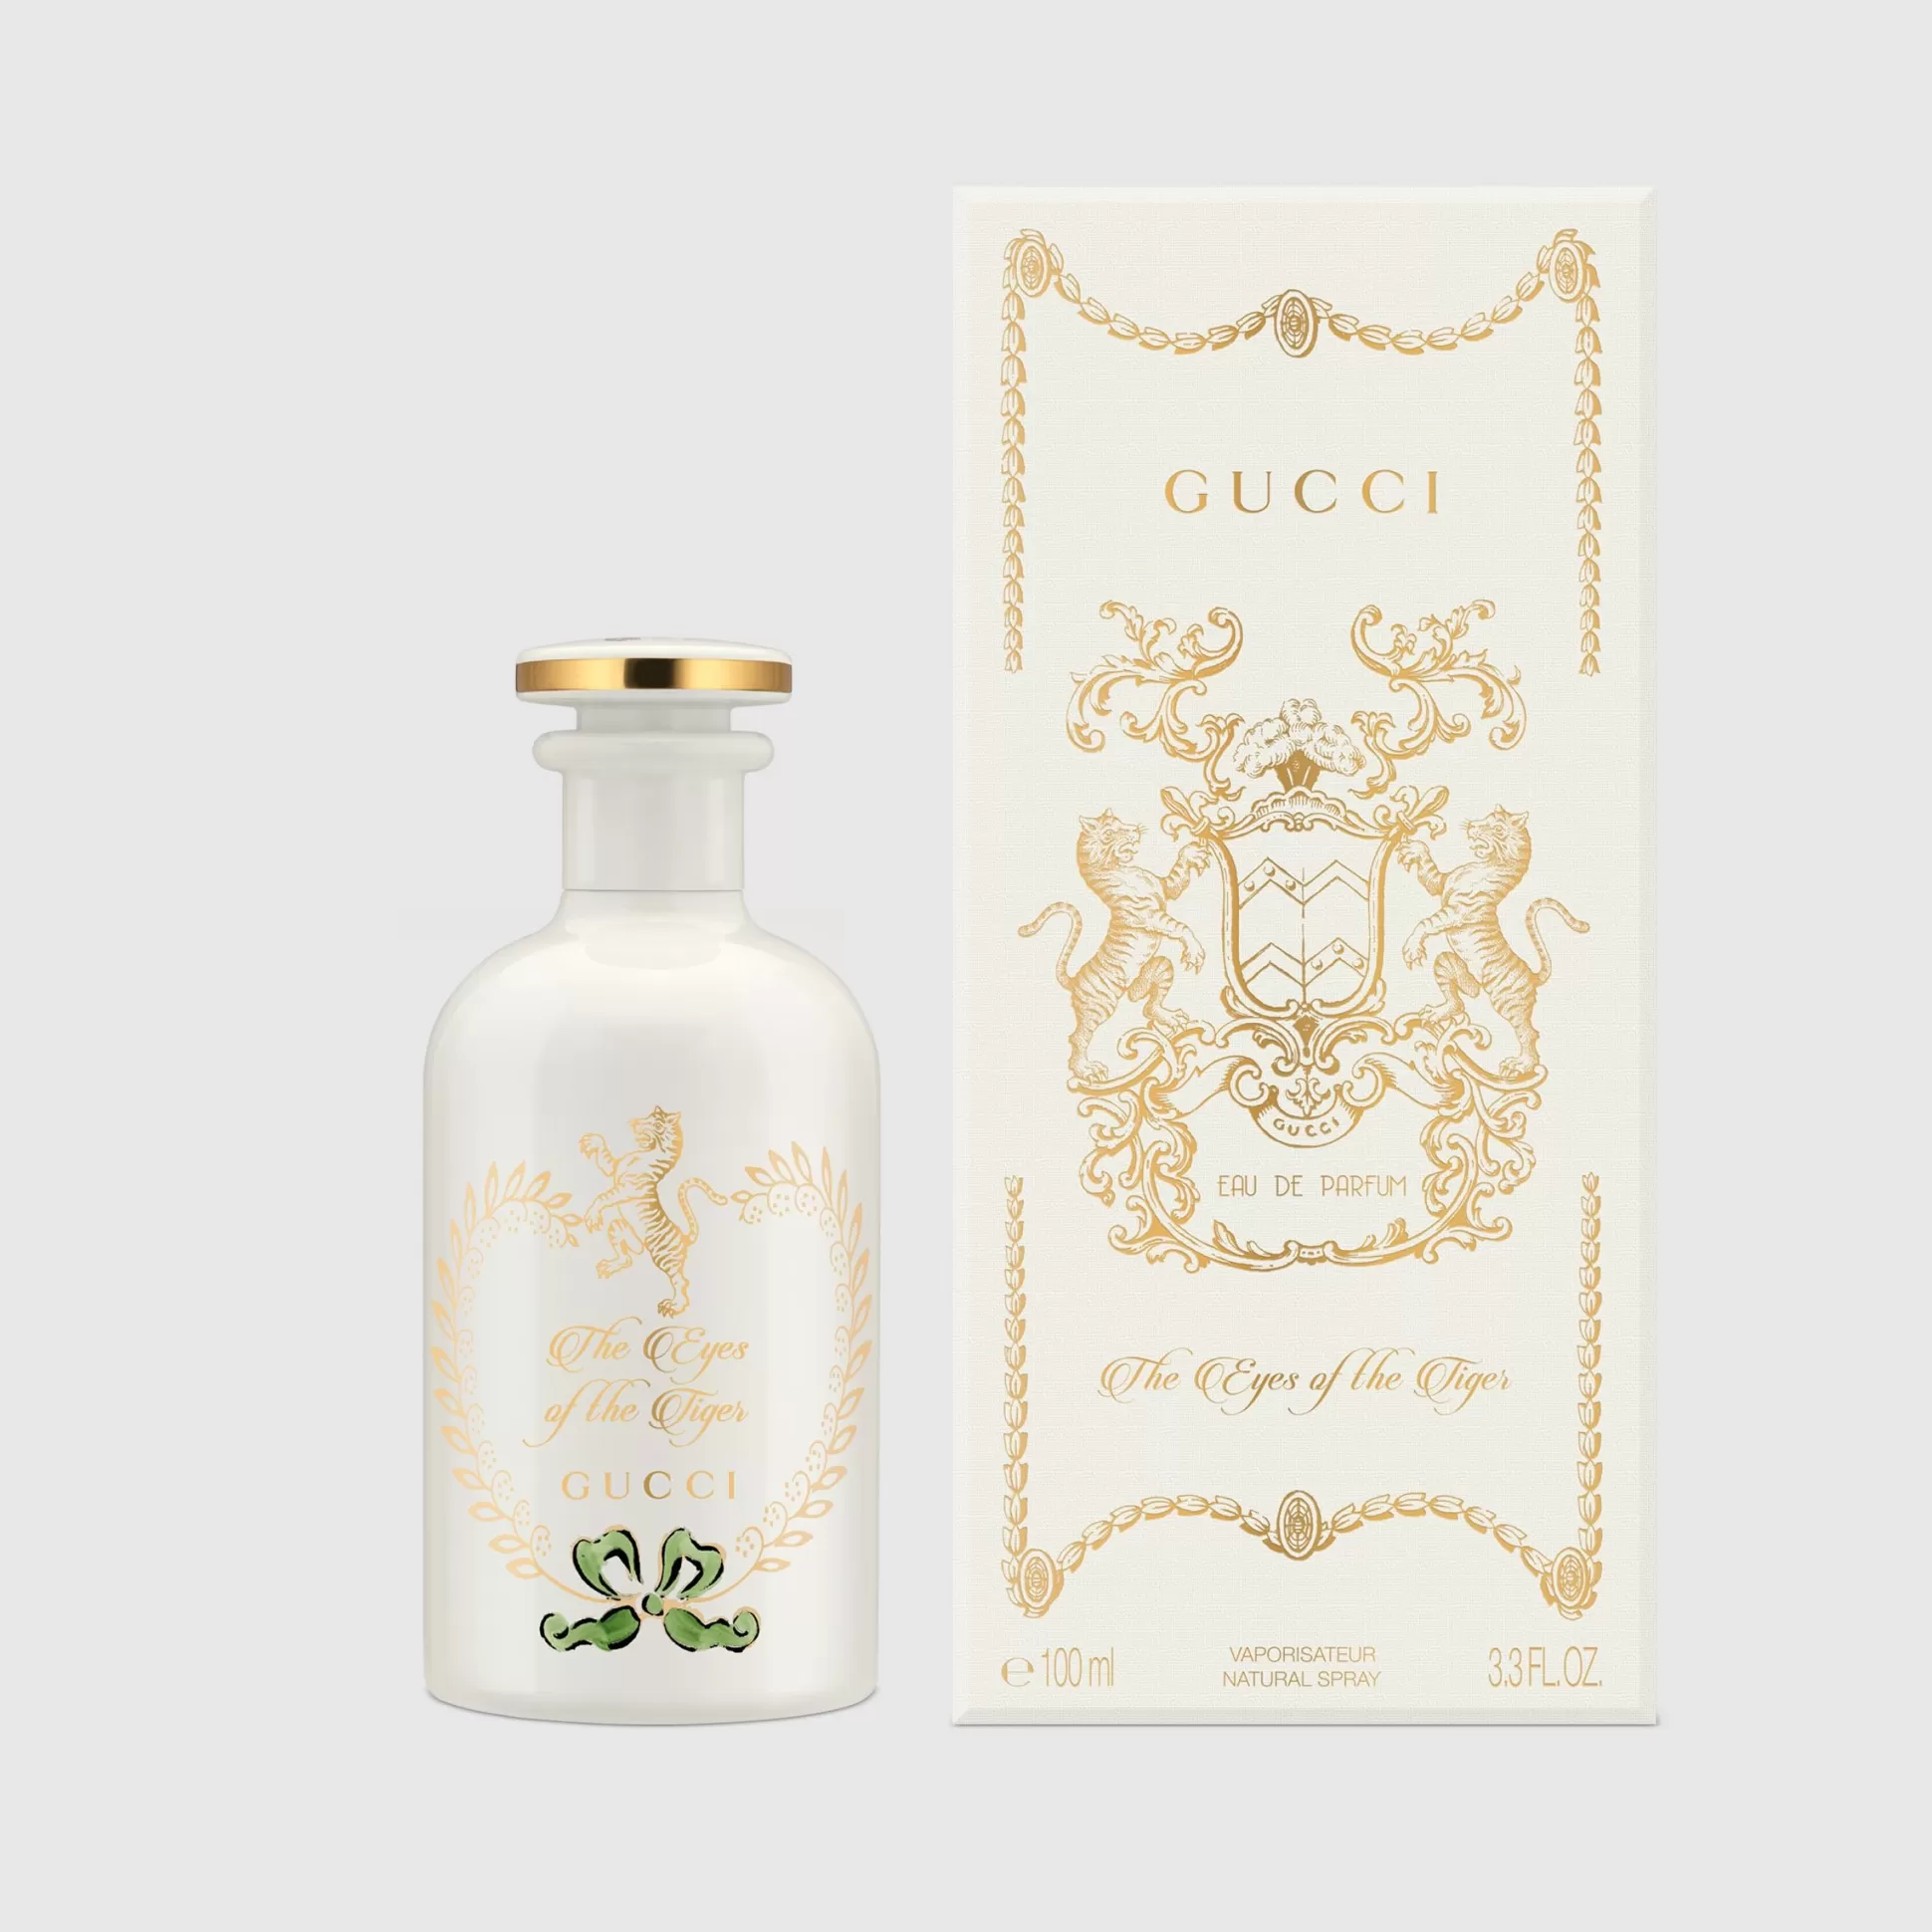 GUCCI The Alchemist'S Garden, The Eyes Of The Tiger, 100Ml, Eau De Parfum- Men'S Fragrances